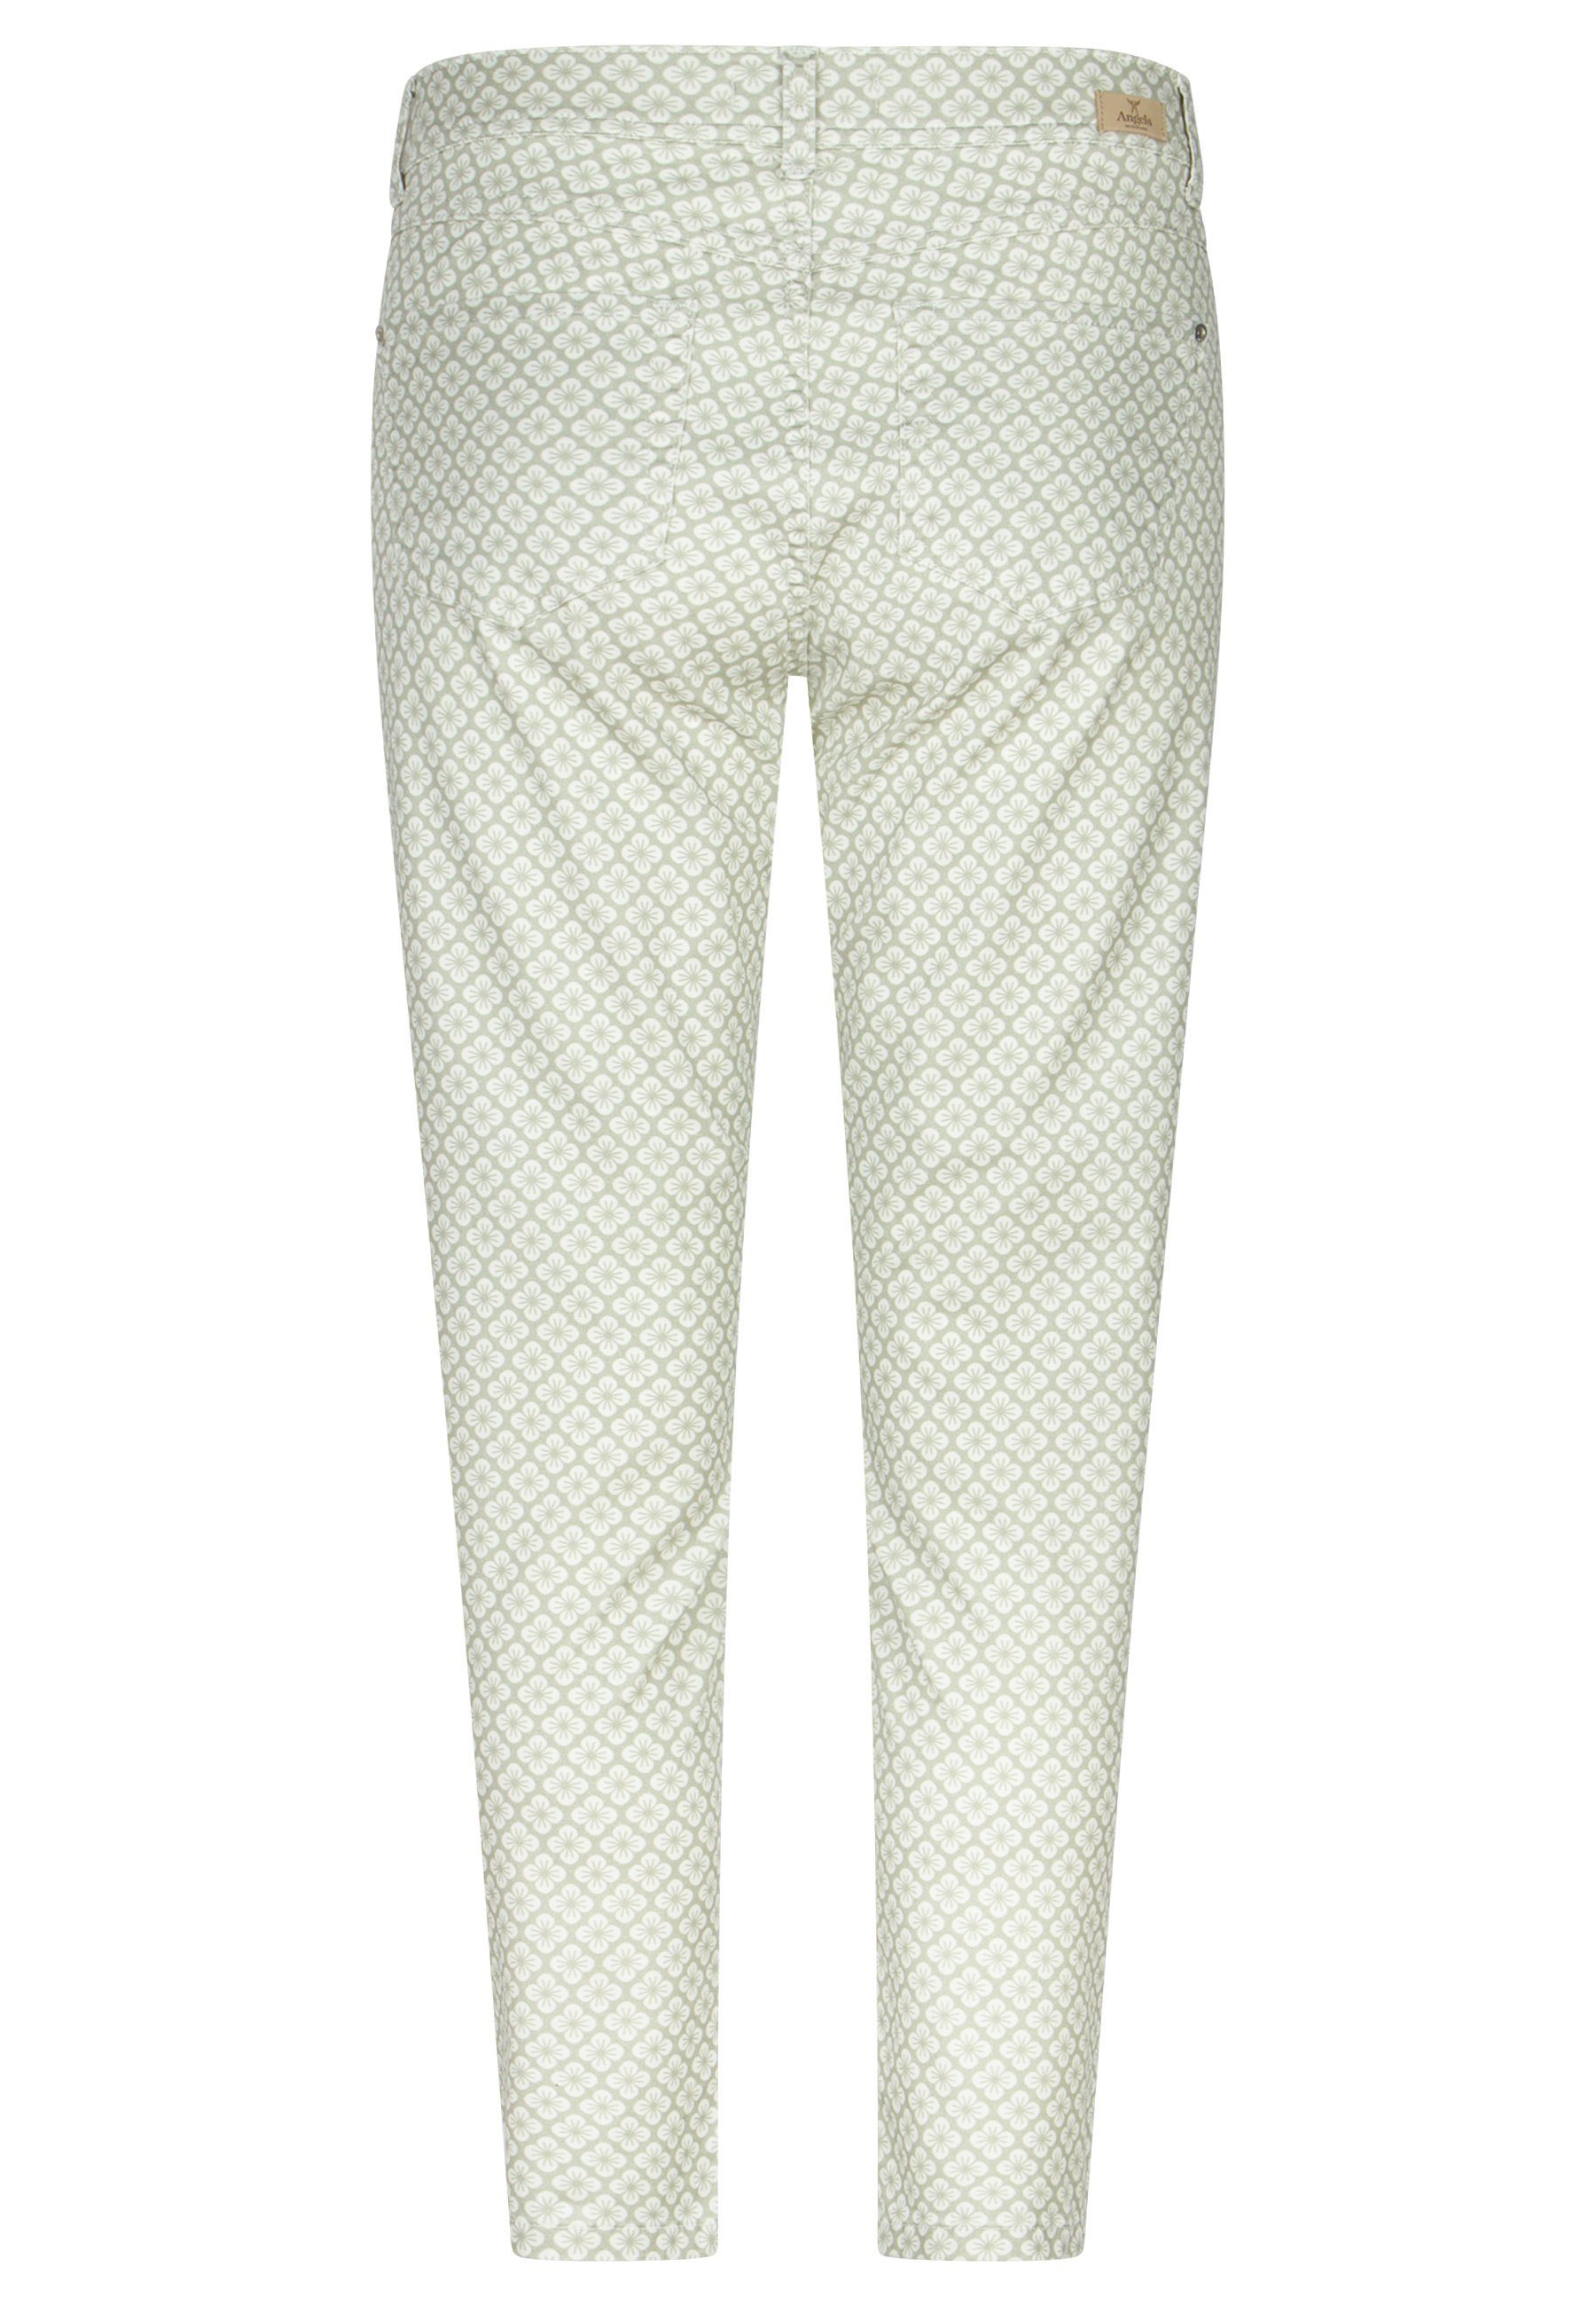 Hose Blumen-Muster grün Label-Applikationen 7/8-Jeans mit mit Ornella ANGELS